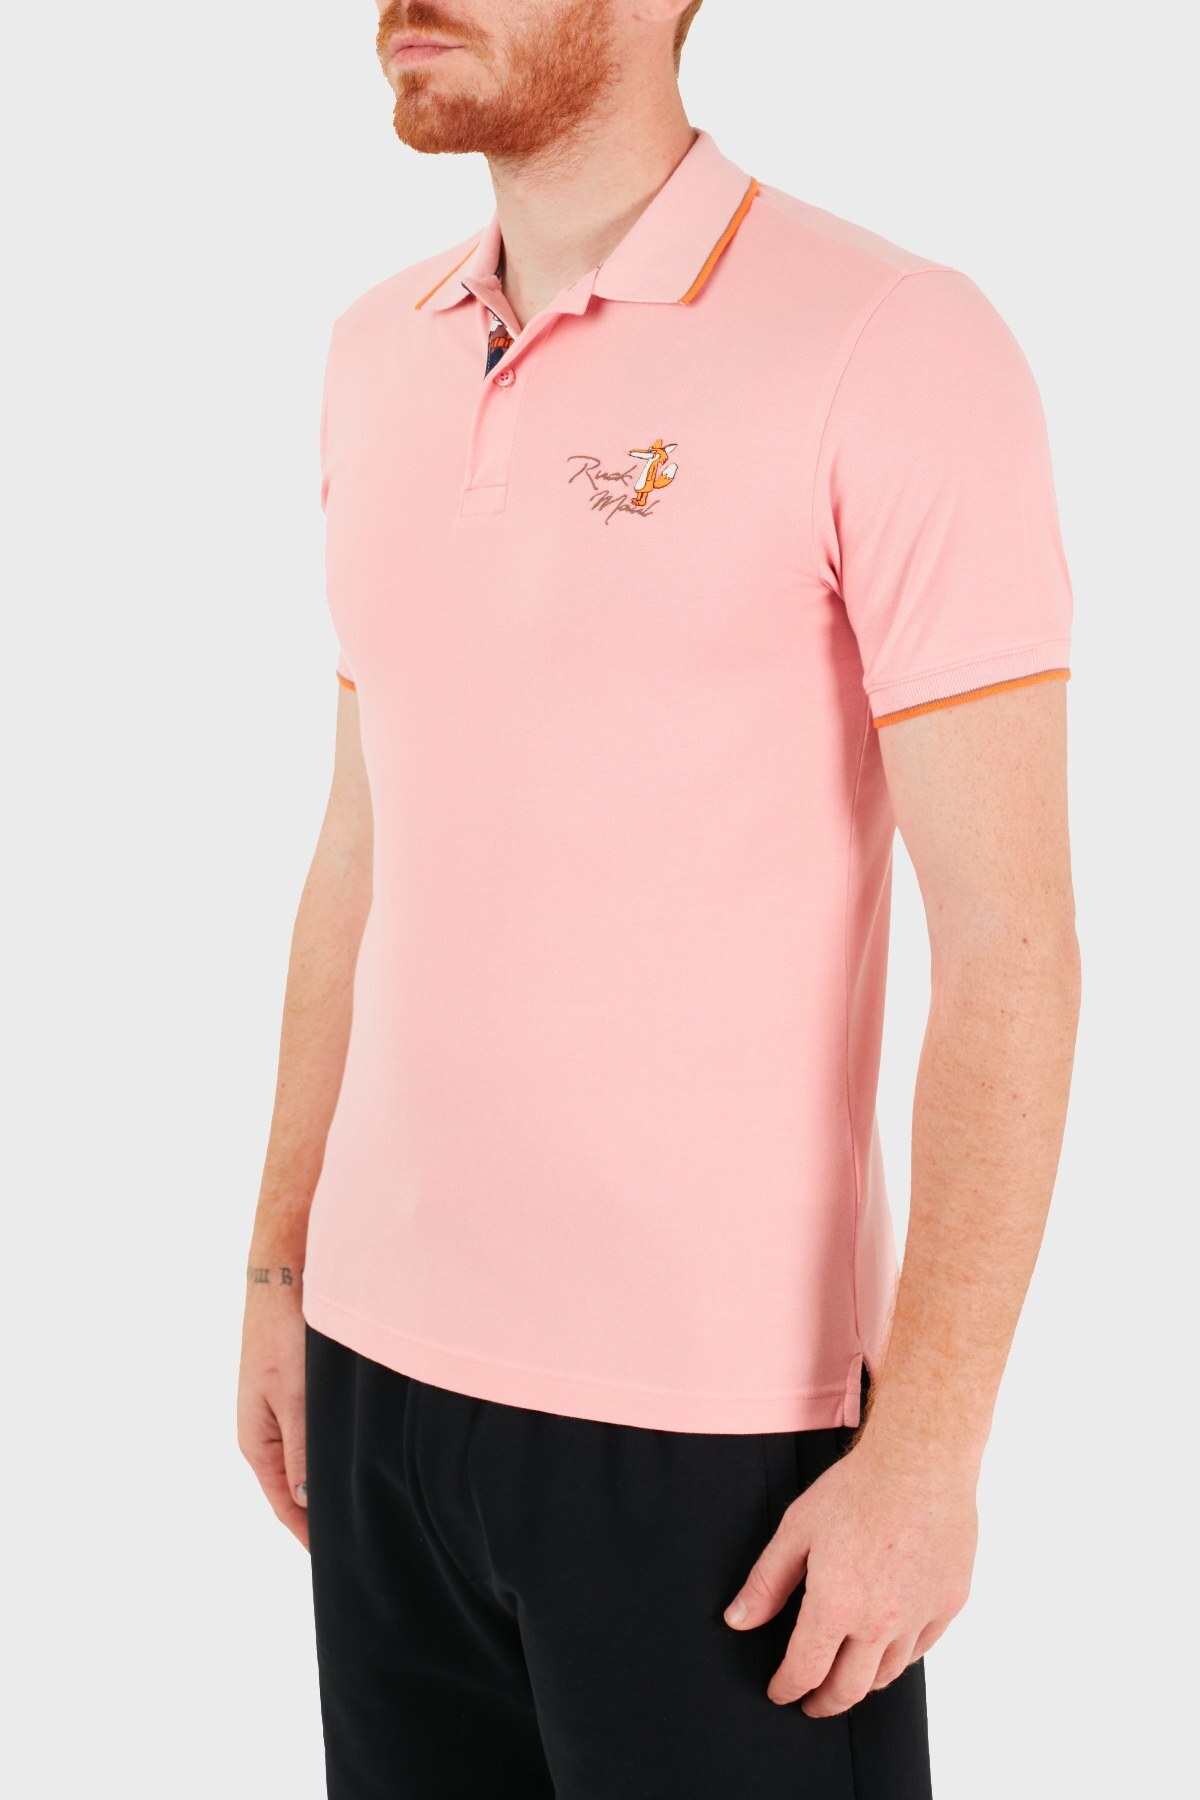 Ruck & Maul Pamuklu Düğmeli T Shirt Erkek Polo RMM01000716 PEMBE